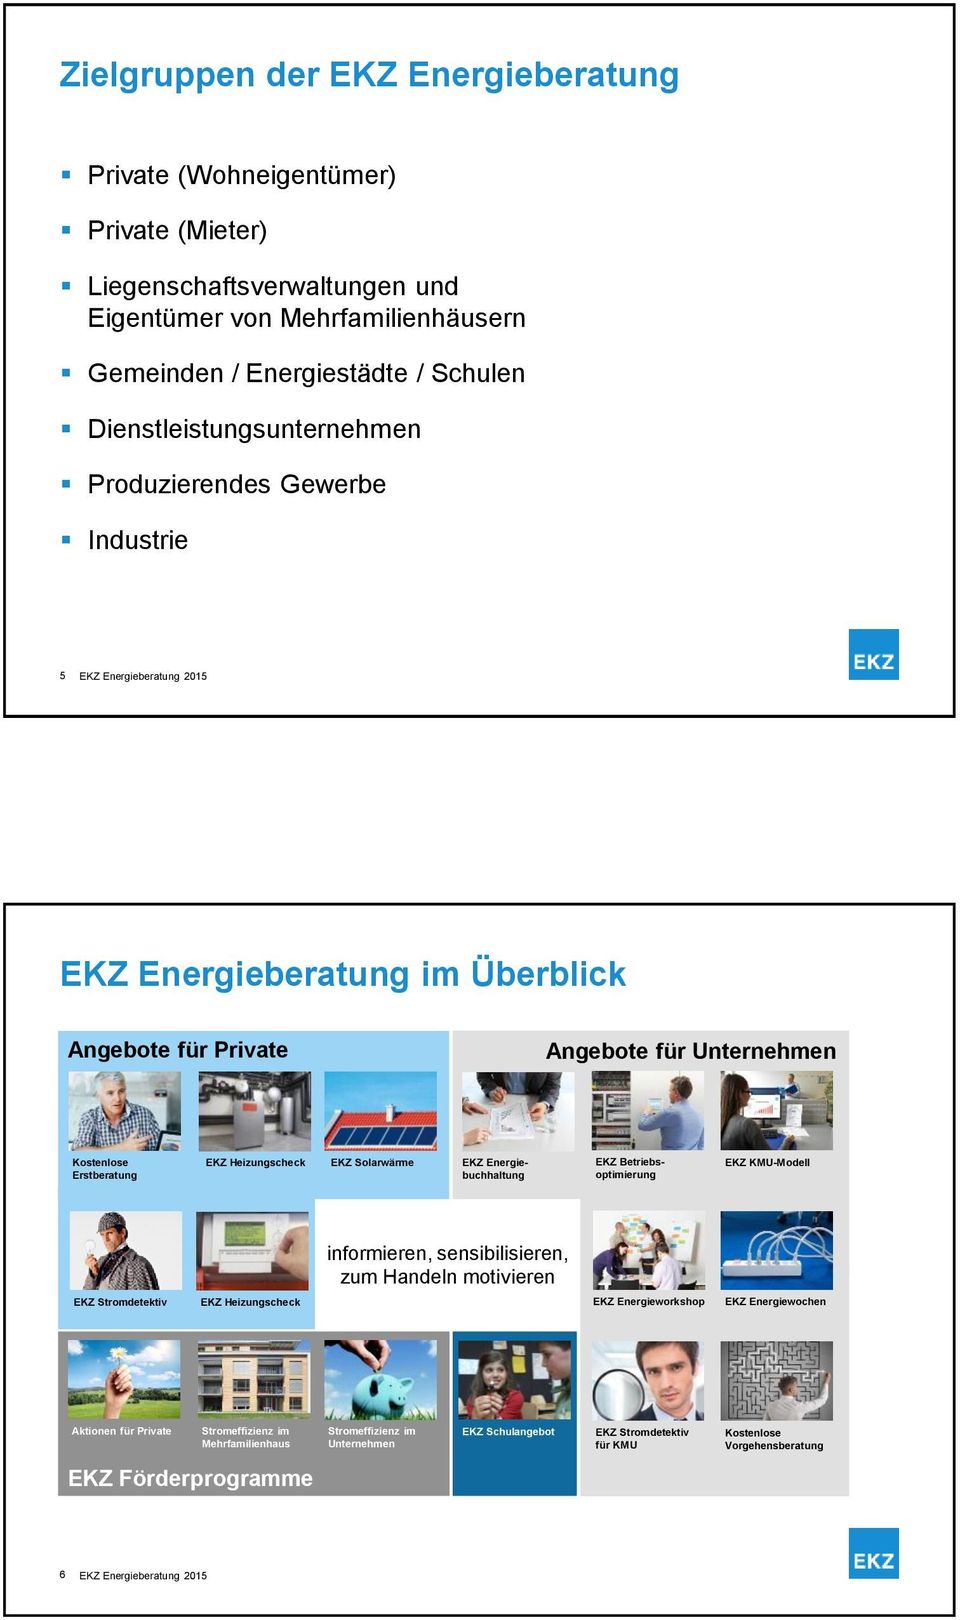 EKZ Energie- EKZ Betriebs- EKZ KMU-Modell Erstberatung buchhaltung optimierung informieren, sensibilisieren, zum Handeln motivieren EKZ Stromdetektiv EKZ Heizungscheck EKZ Energieworkshop